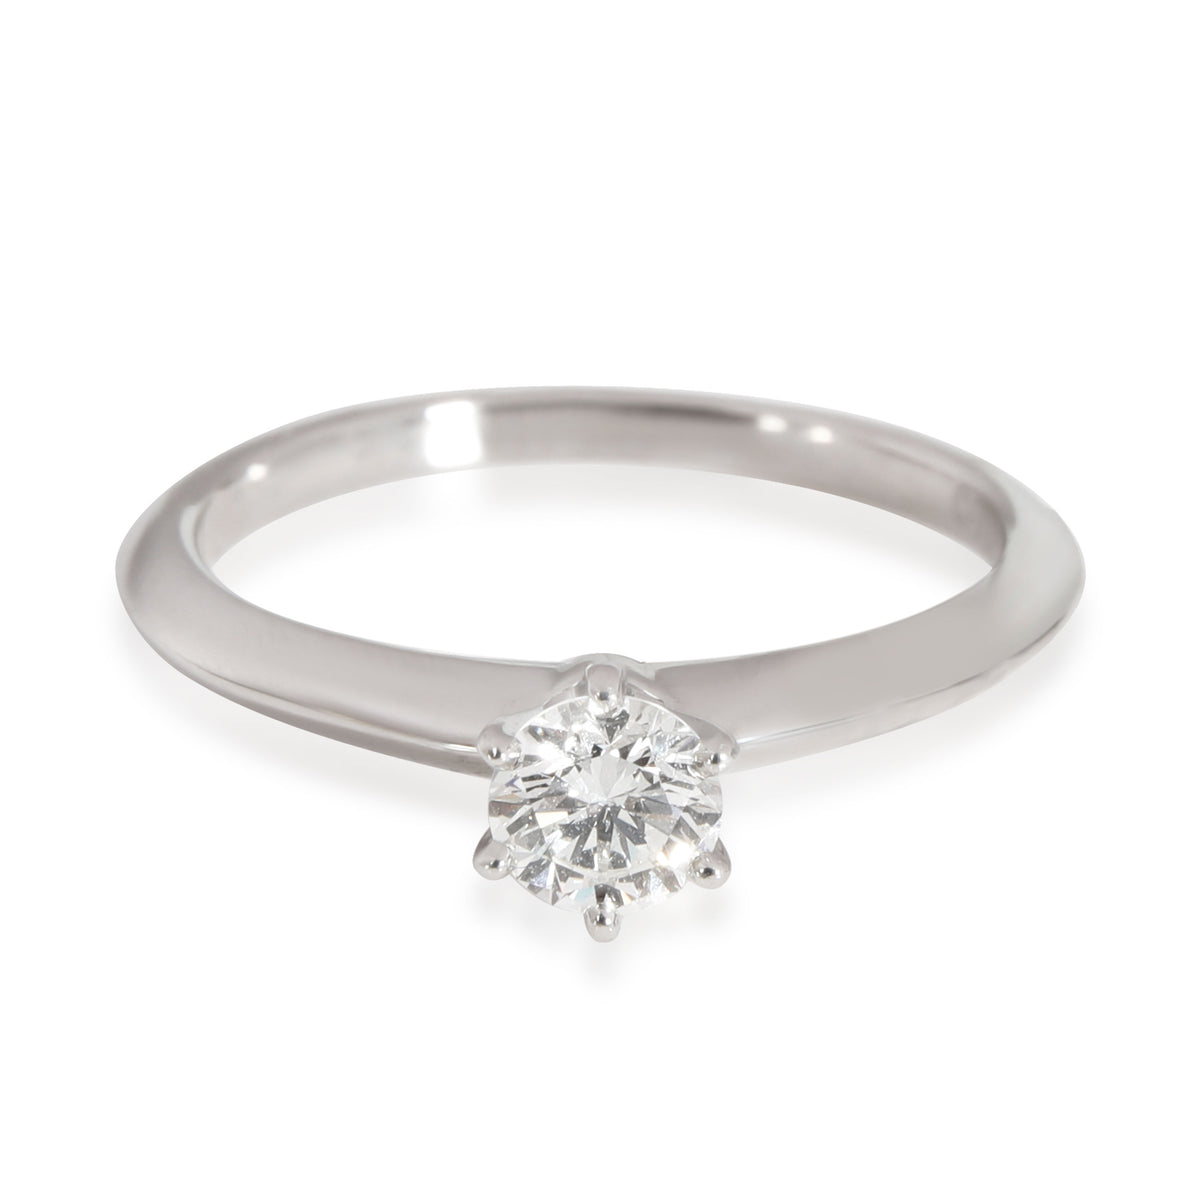 Diamond Solitaire Engagement Ring in Platinum H VS1 0.33 CTW